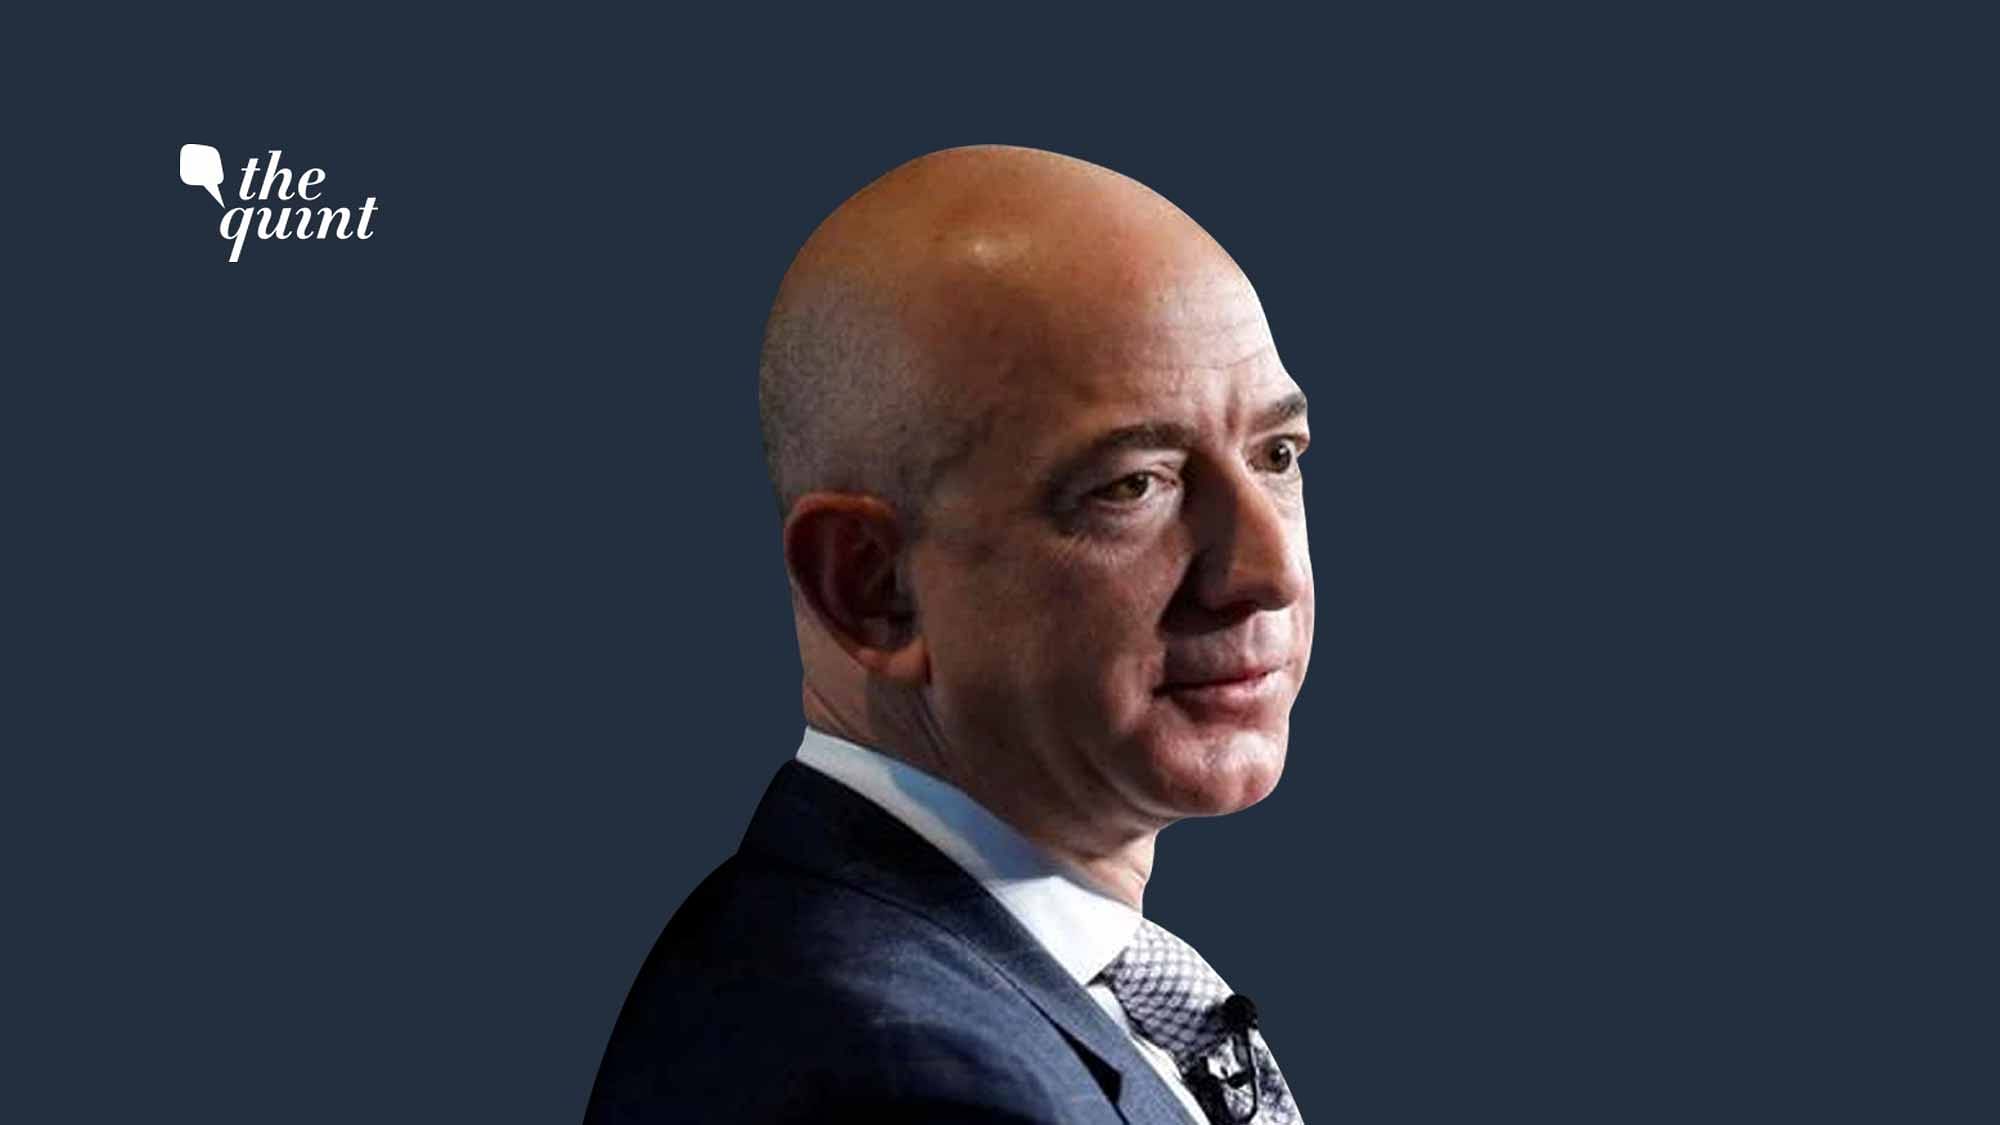 <div class="paragraphs"><p>Jeff Bezos, CEO, Amazon</p></div>